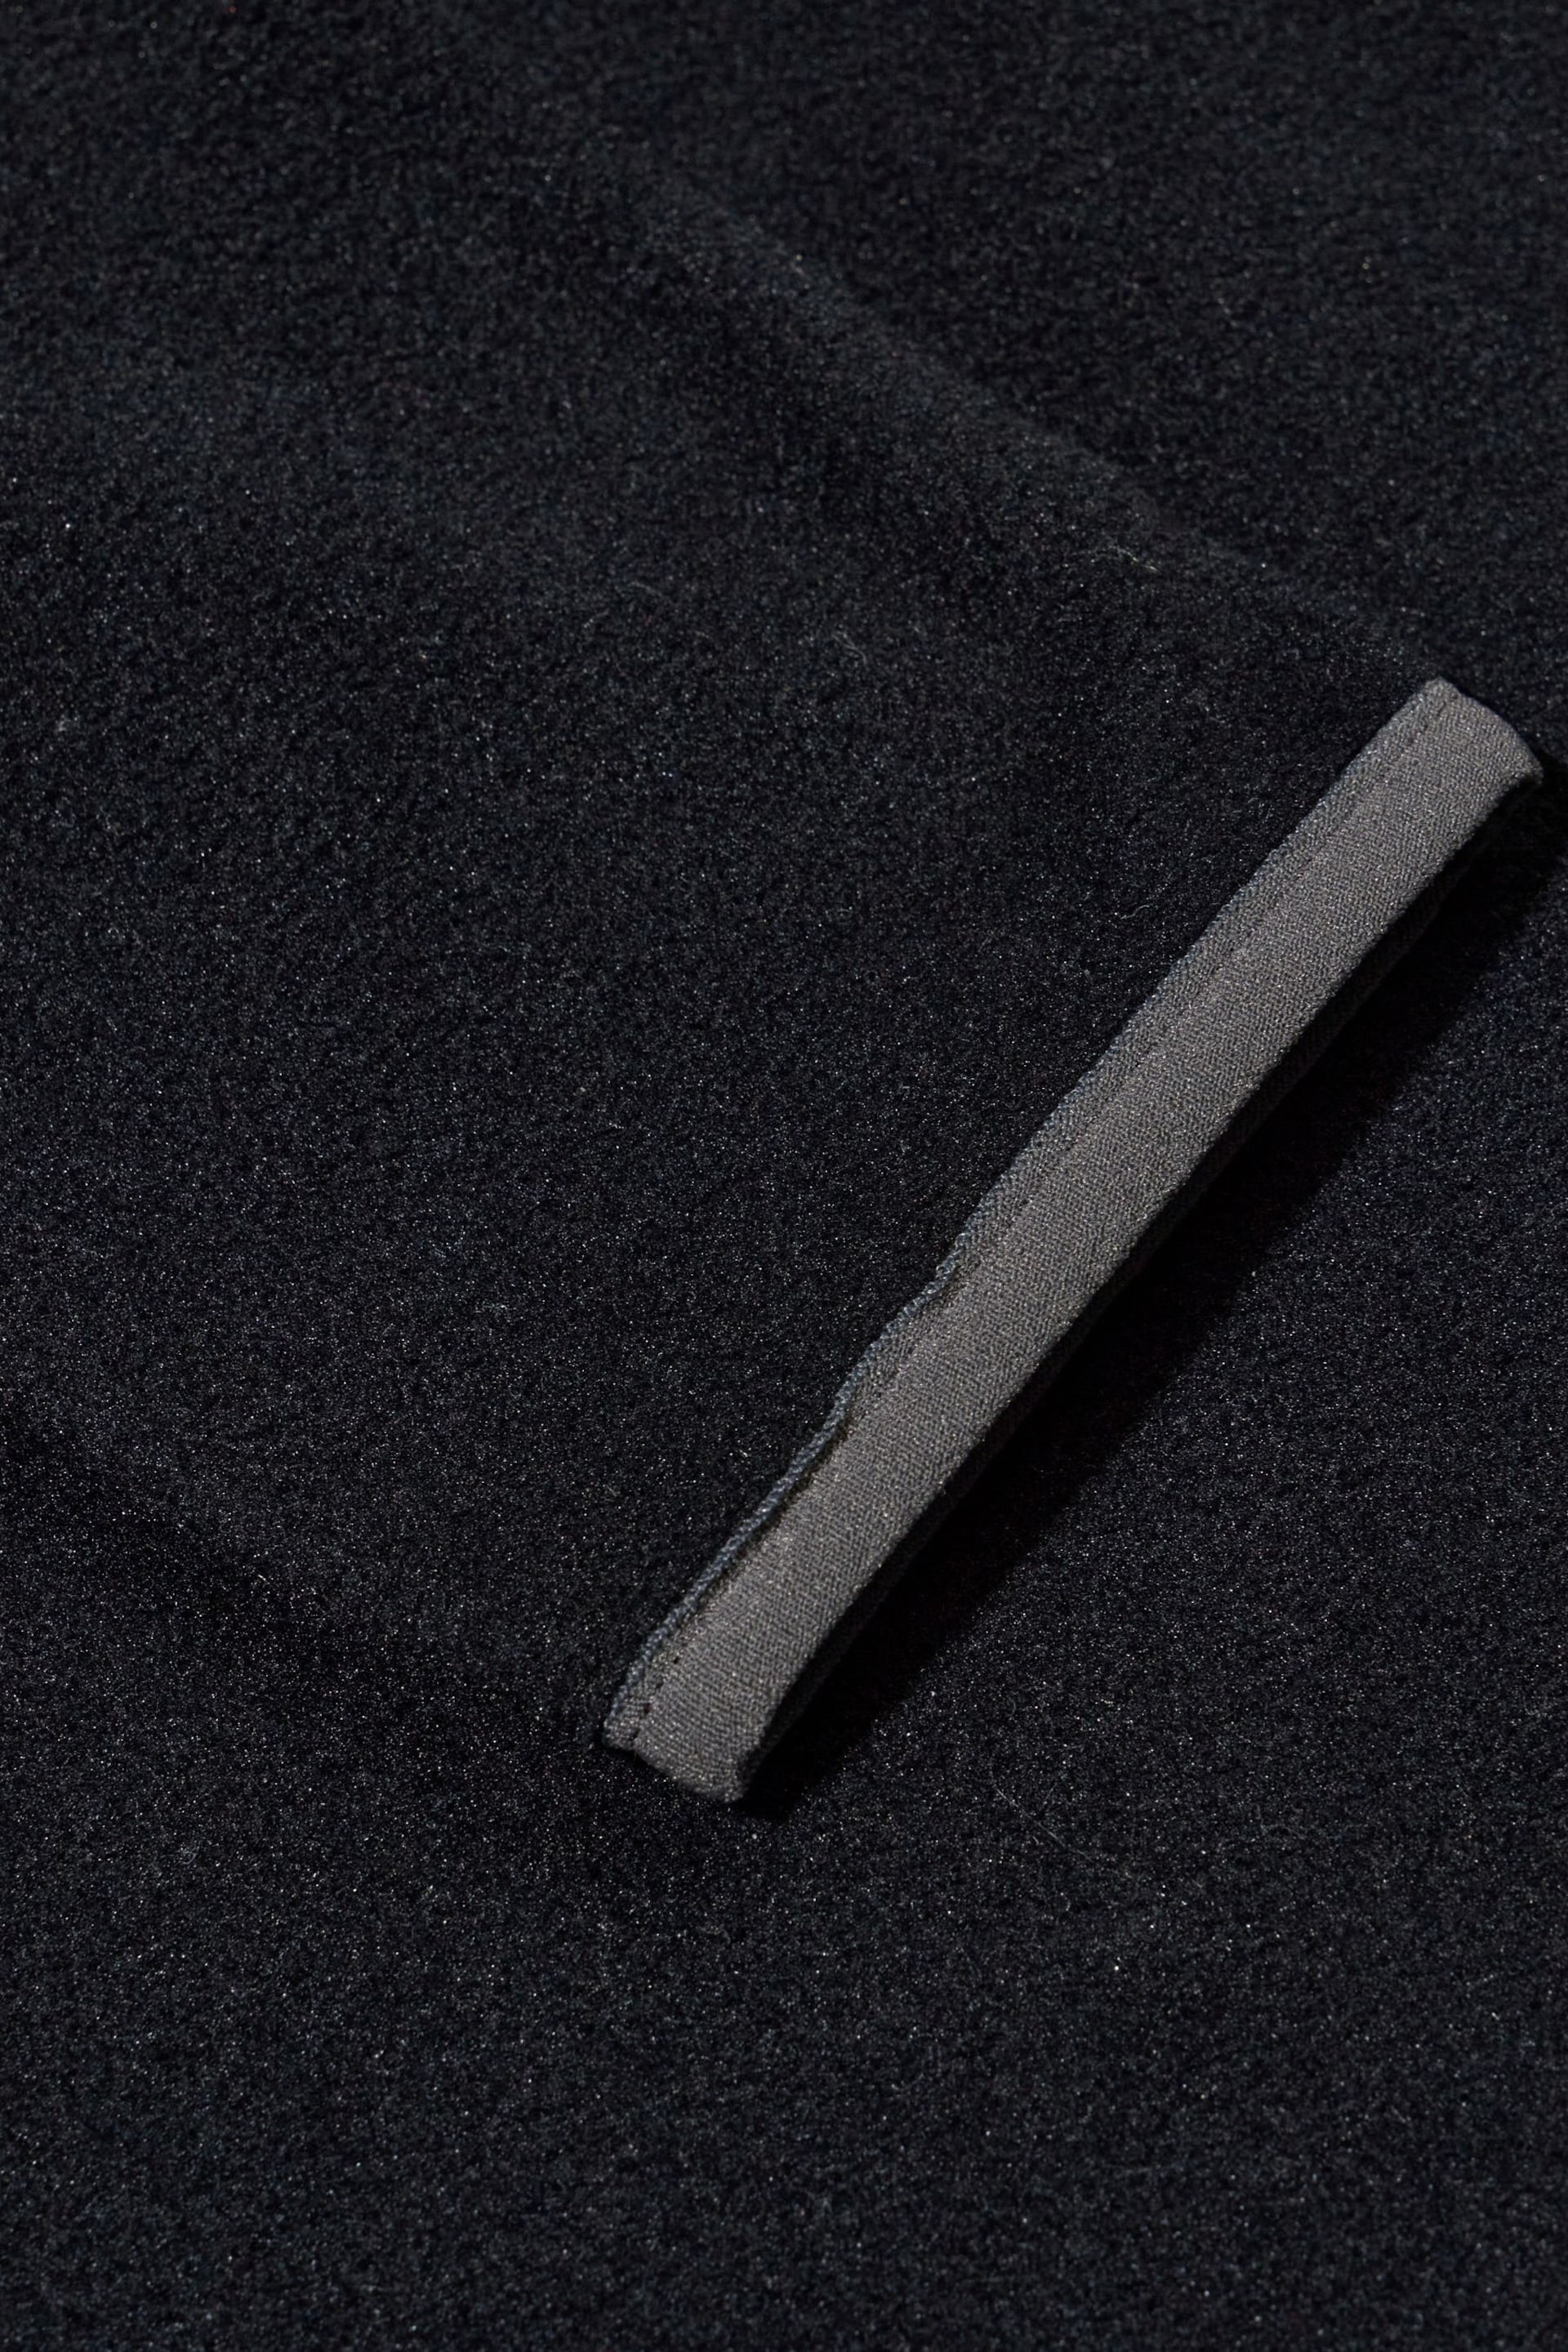 Berghaus Prism 2.0 Micro Half-Zip Fleece - Image 10 of 12